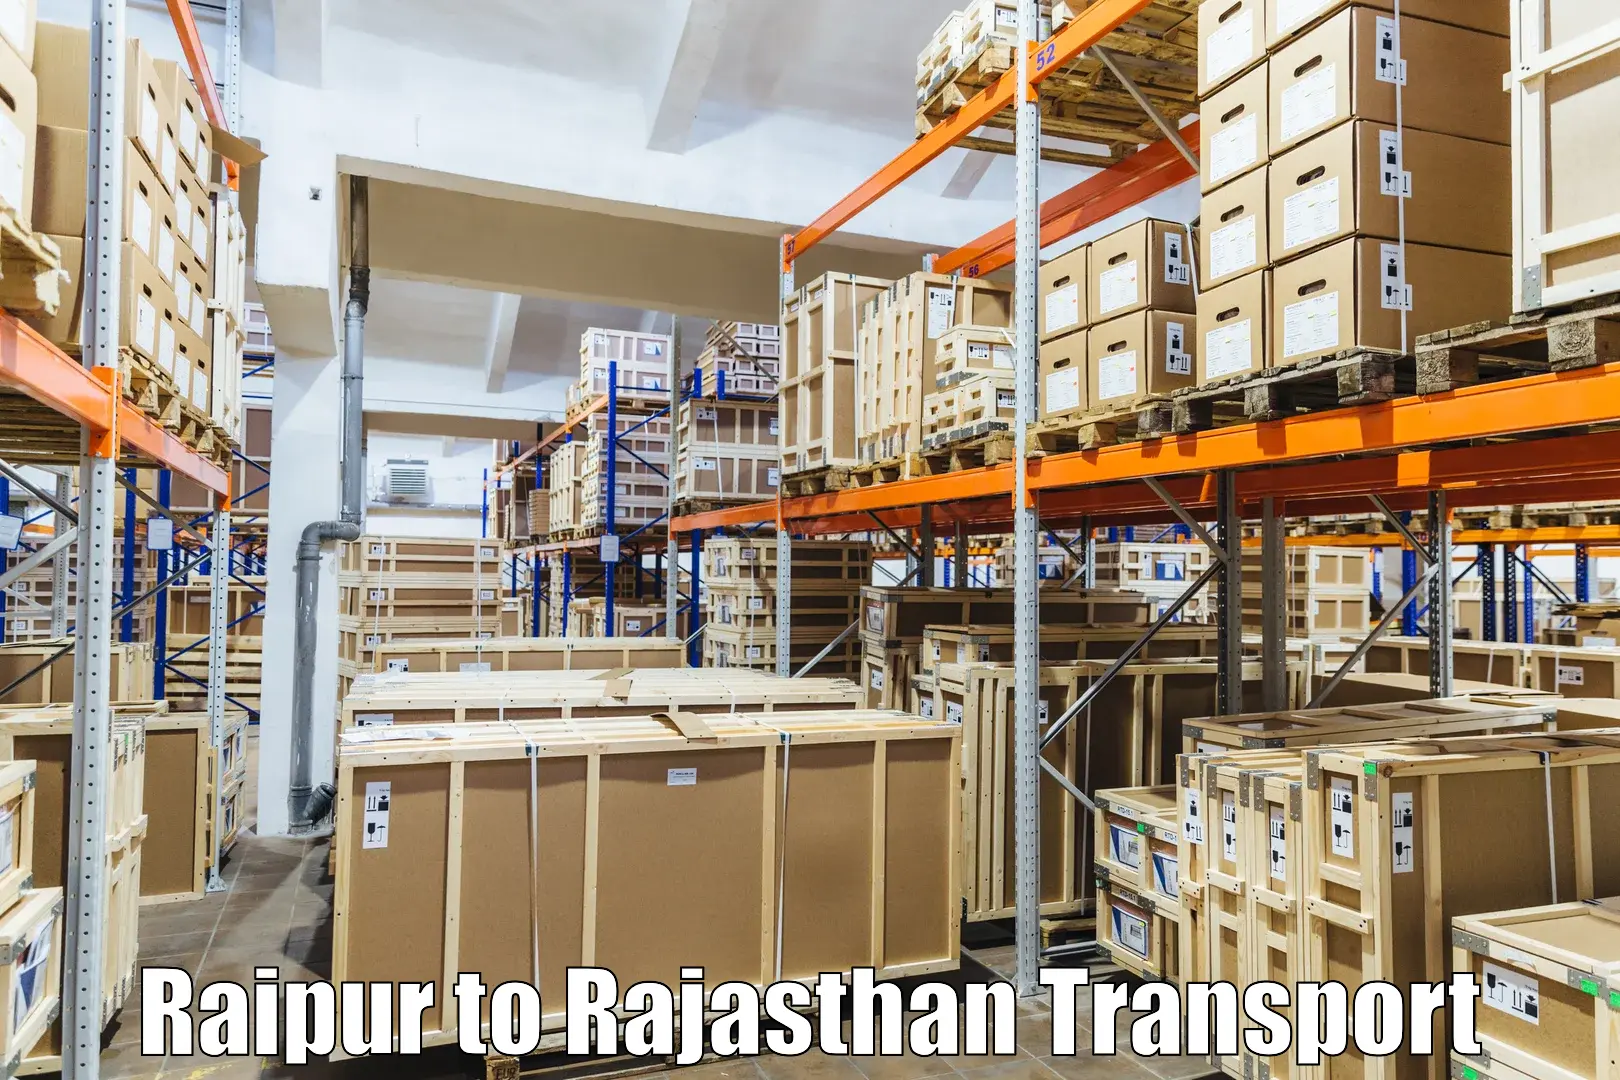 Express transport services Raipur to Dhariyawad